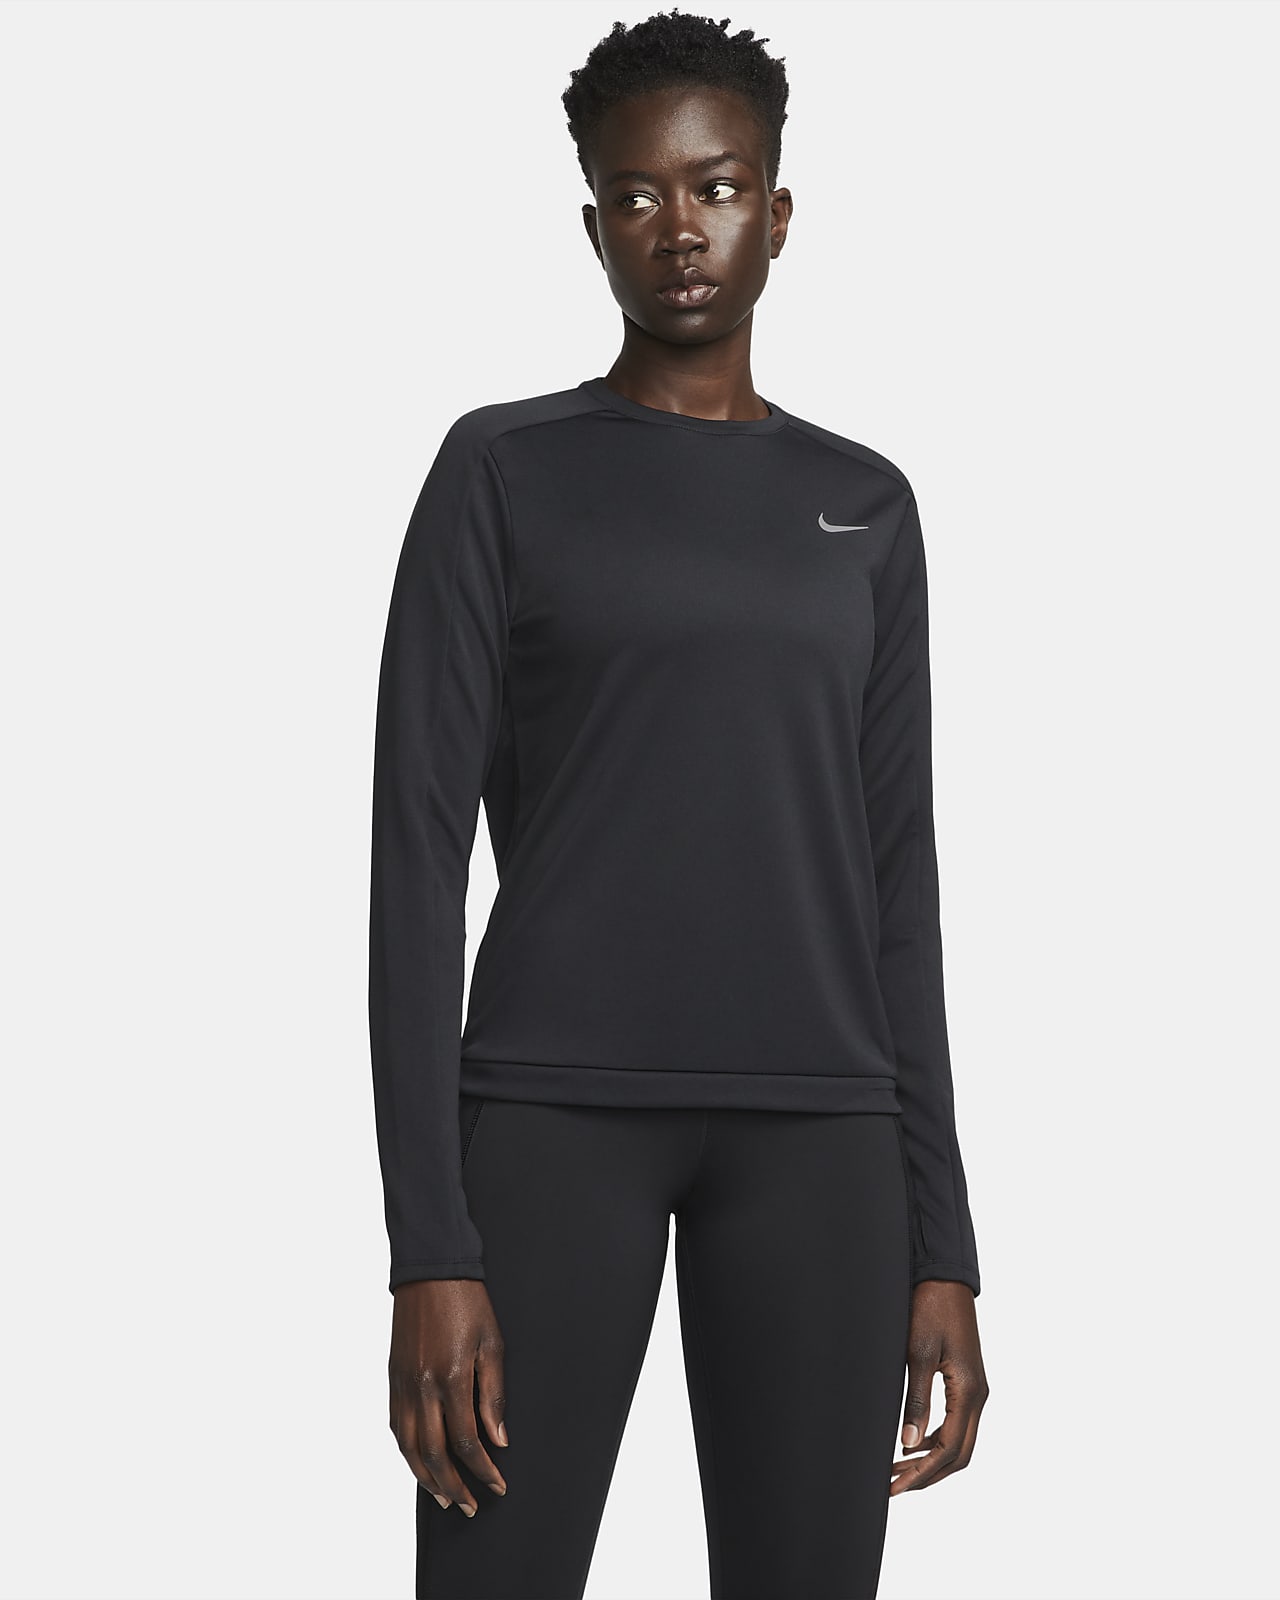 Nike Dri-FIT Damen-Laufoberteil mit Rundhalsausschnitt